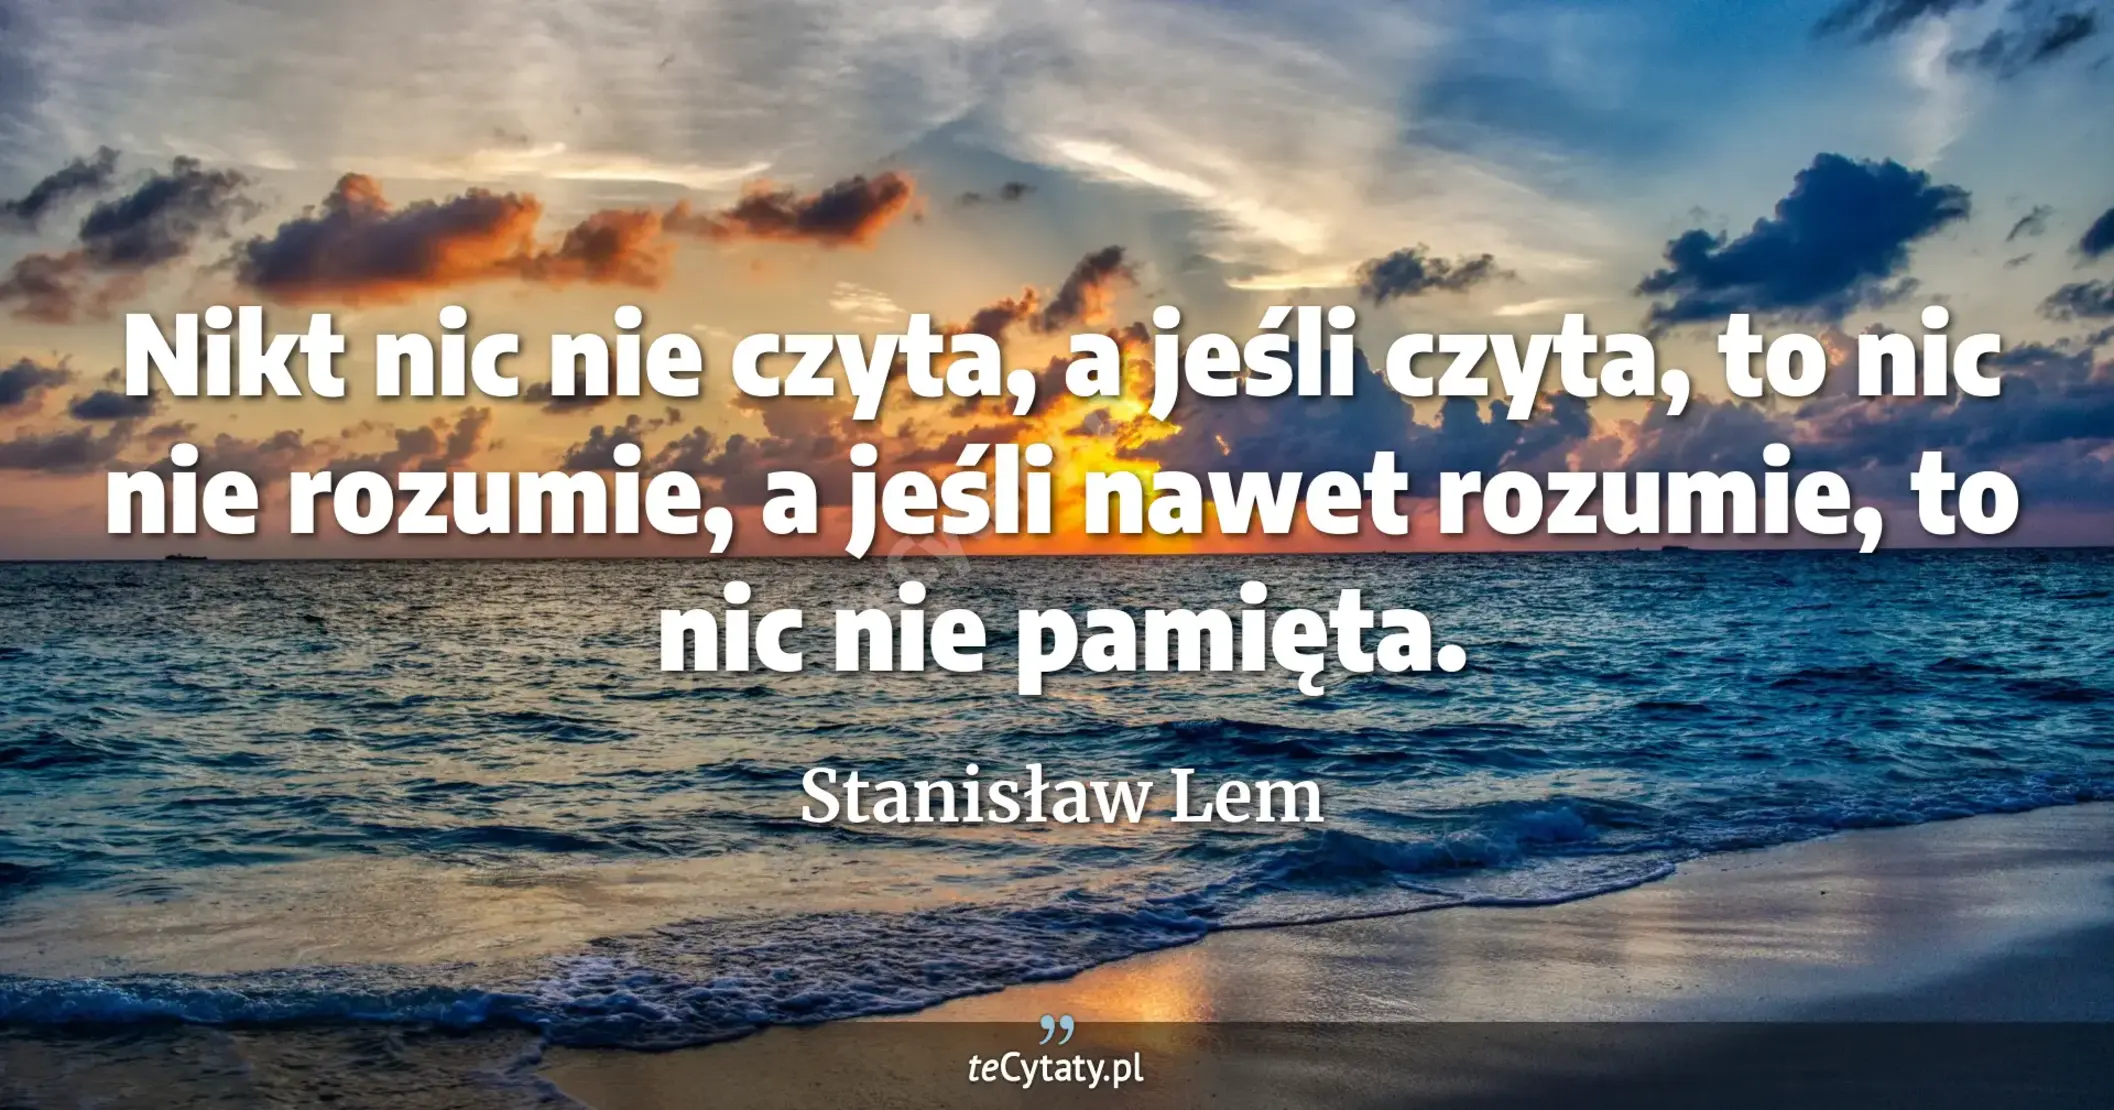 Nikt nic nie czyta, a jeśli czyta, to nic nie rozumie, a jeśli nawet rozumie, to nic nie pamięta. - Stanisław Lem